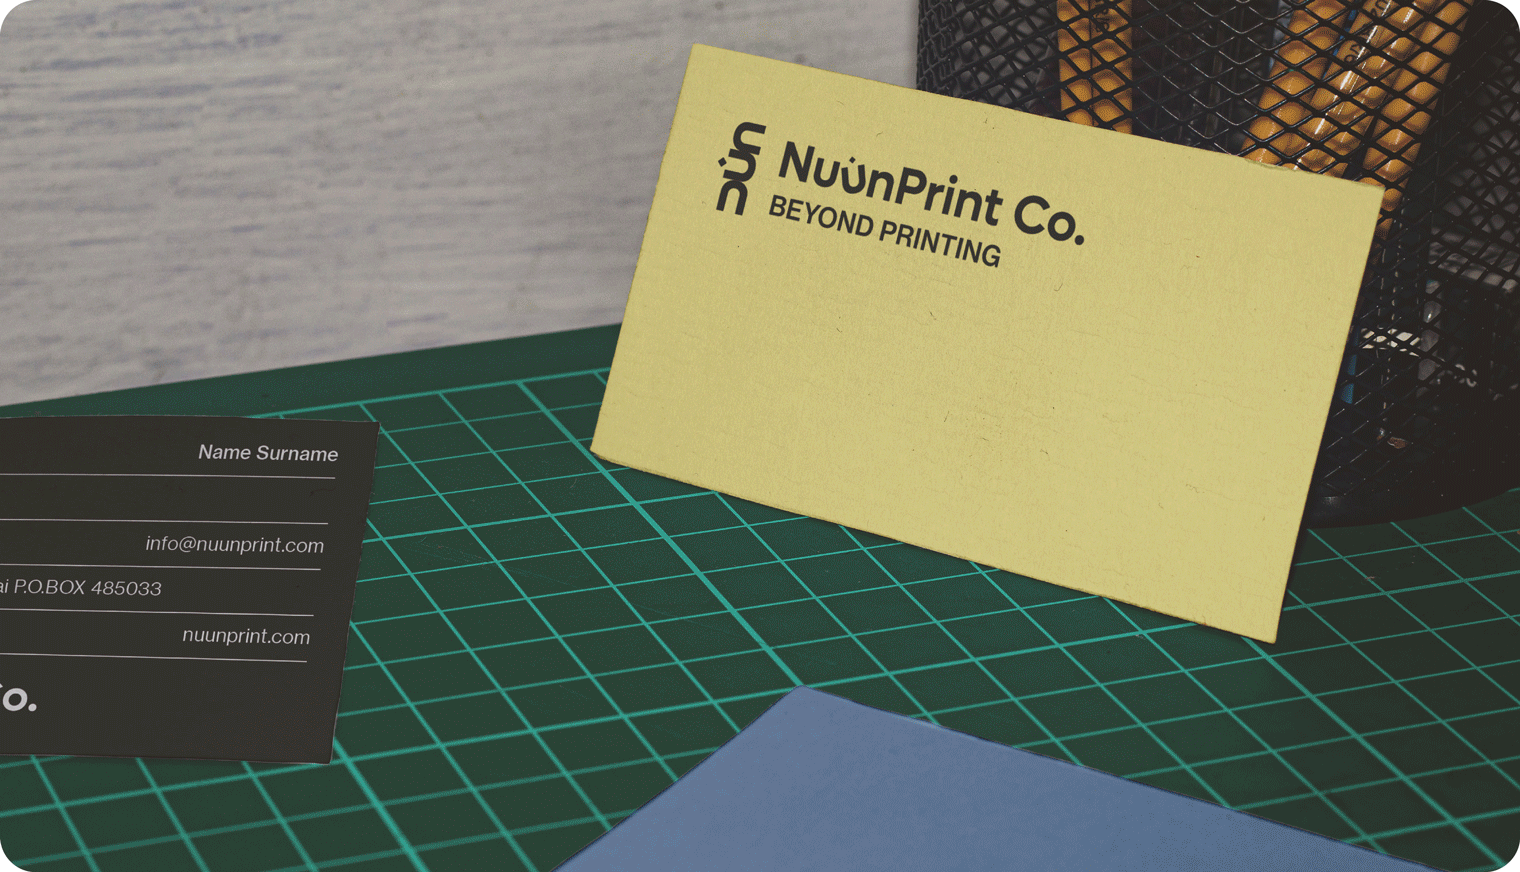 NuunPrint Co. printing